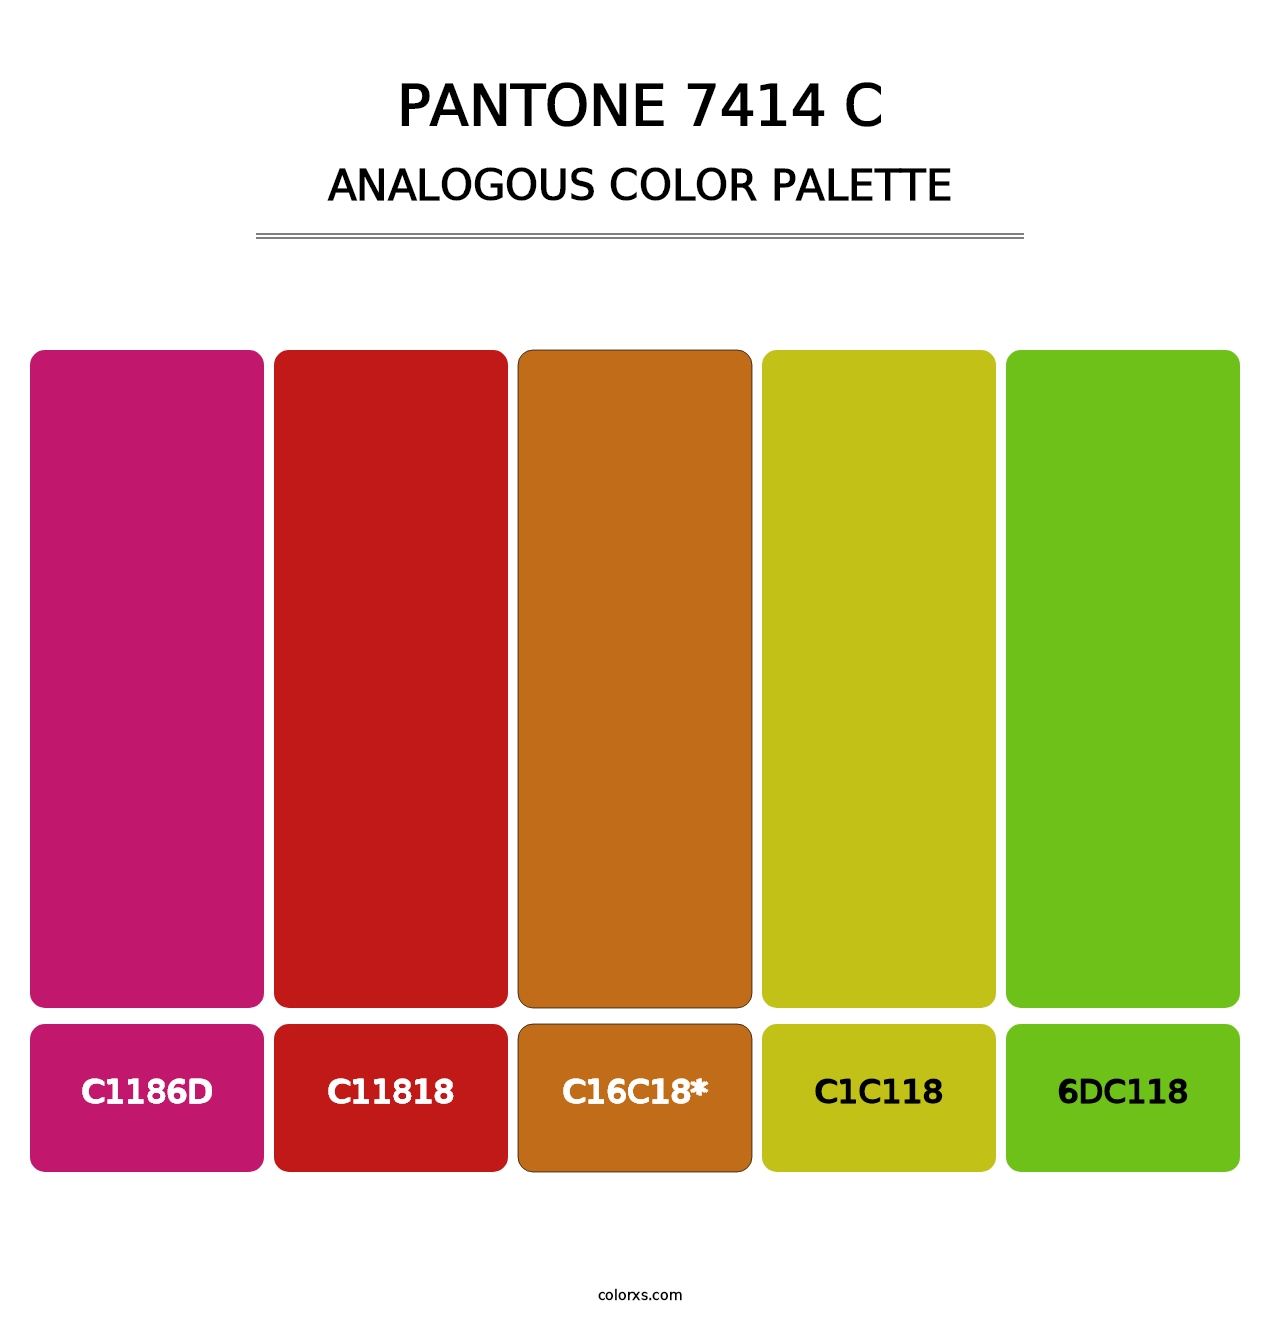 PANTONE 7414 C - Analogous Color Palette